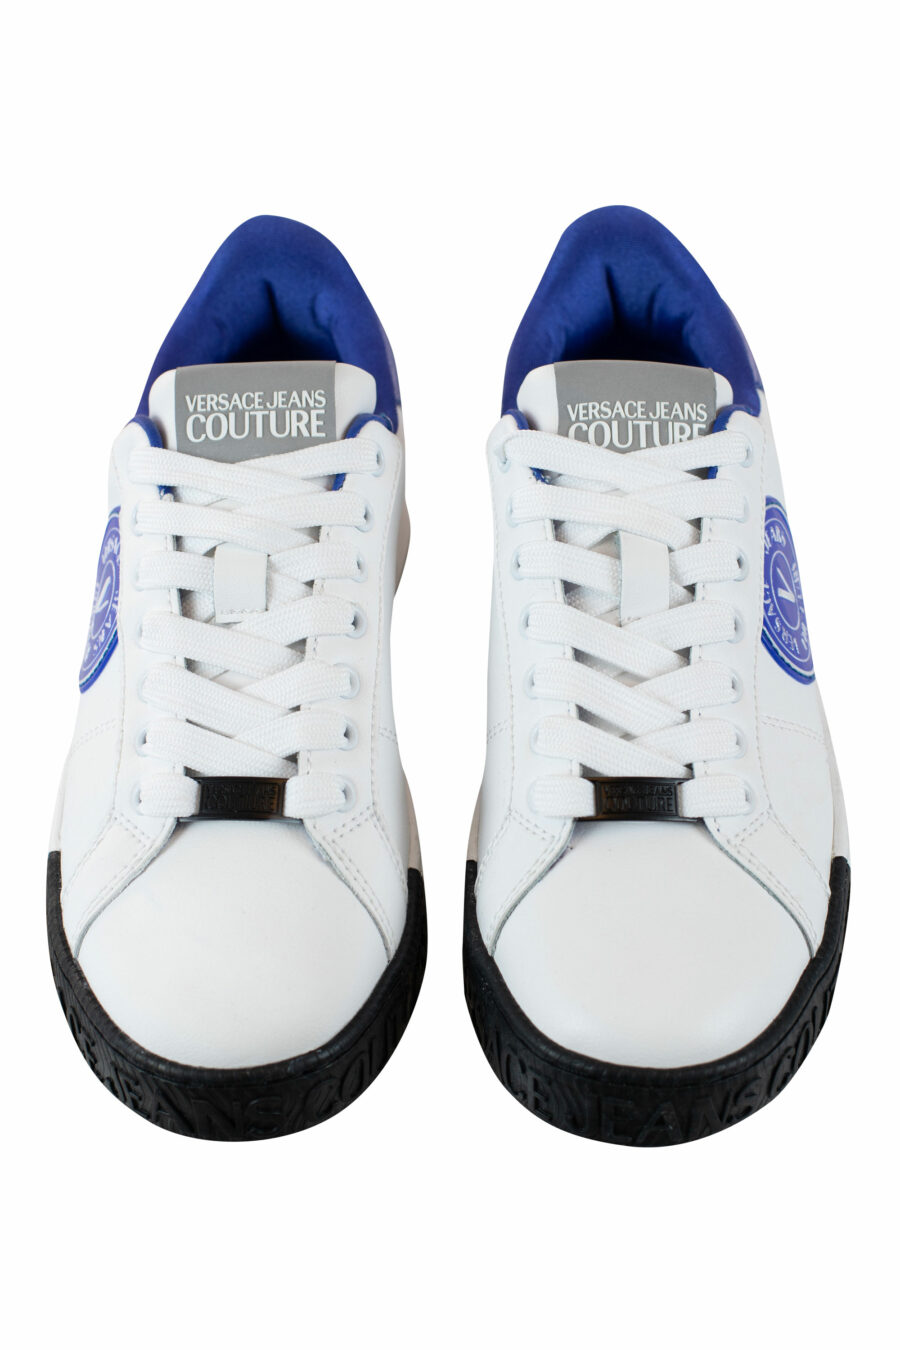 Zapatillas blancas con azul y logo circular - IMG 4297